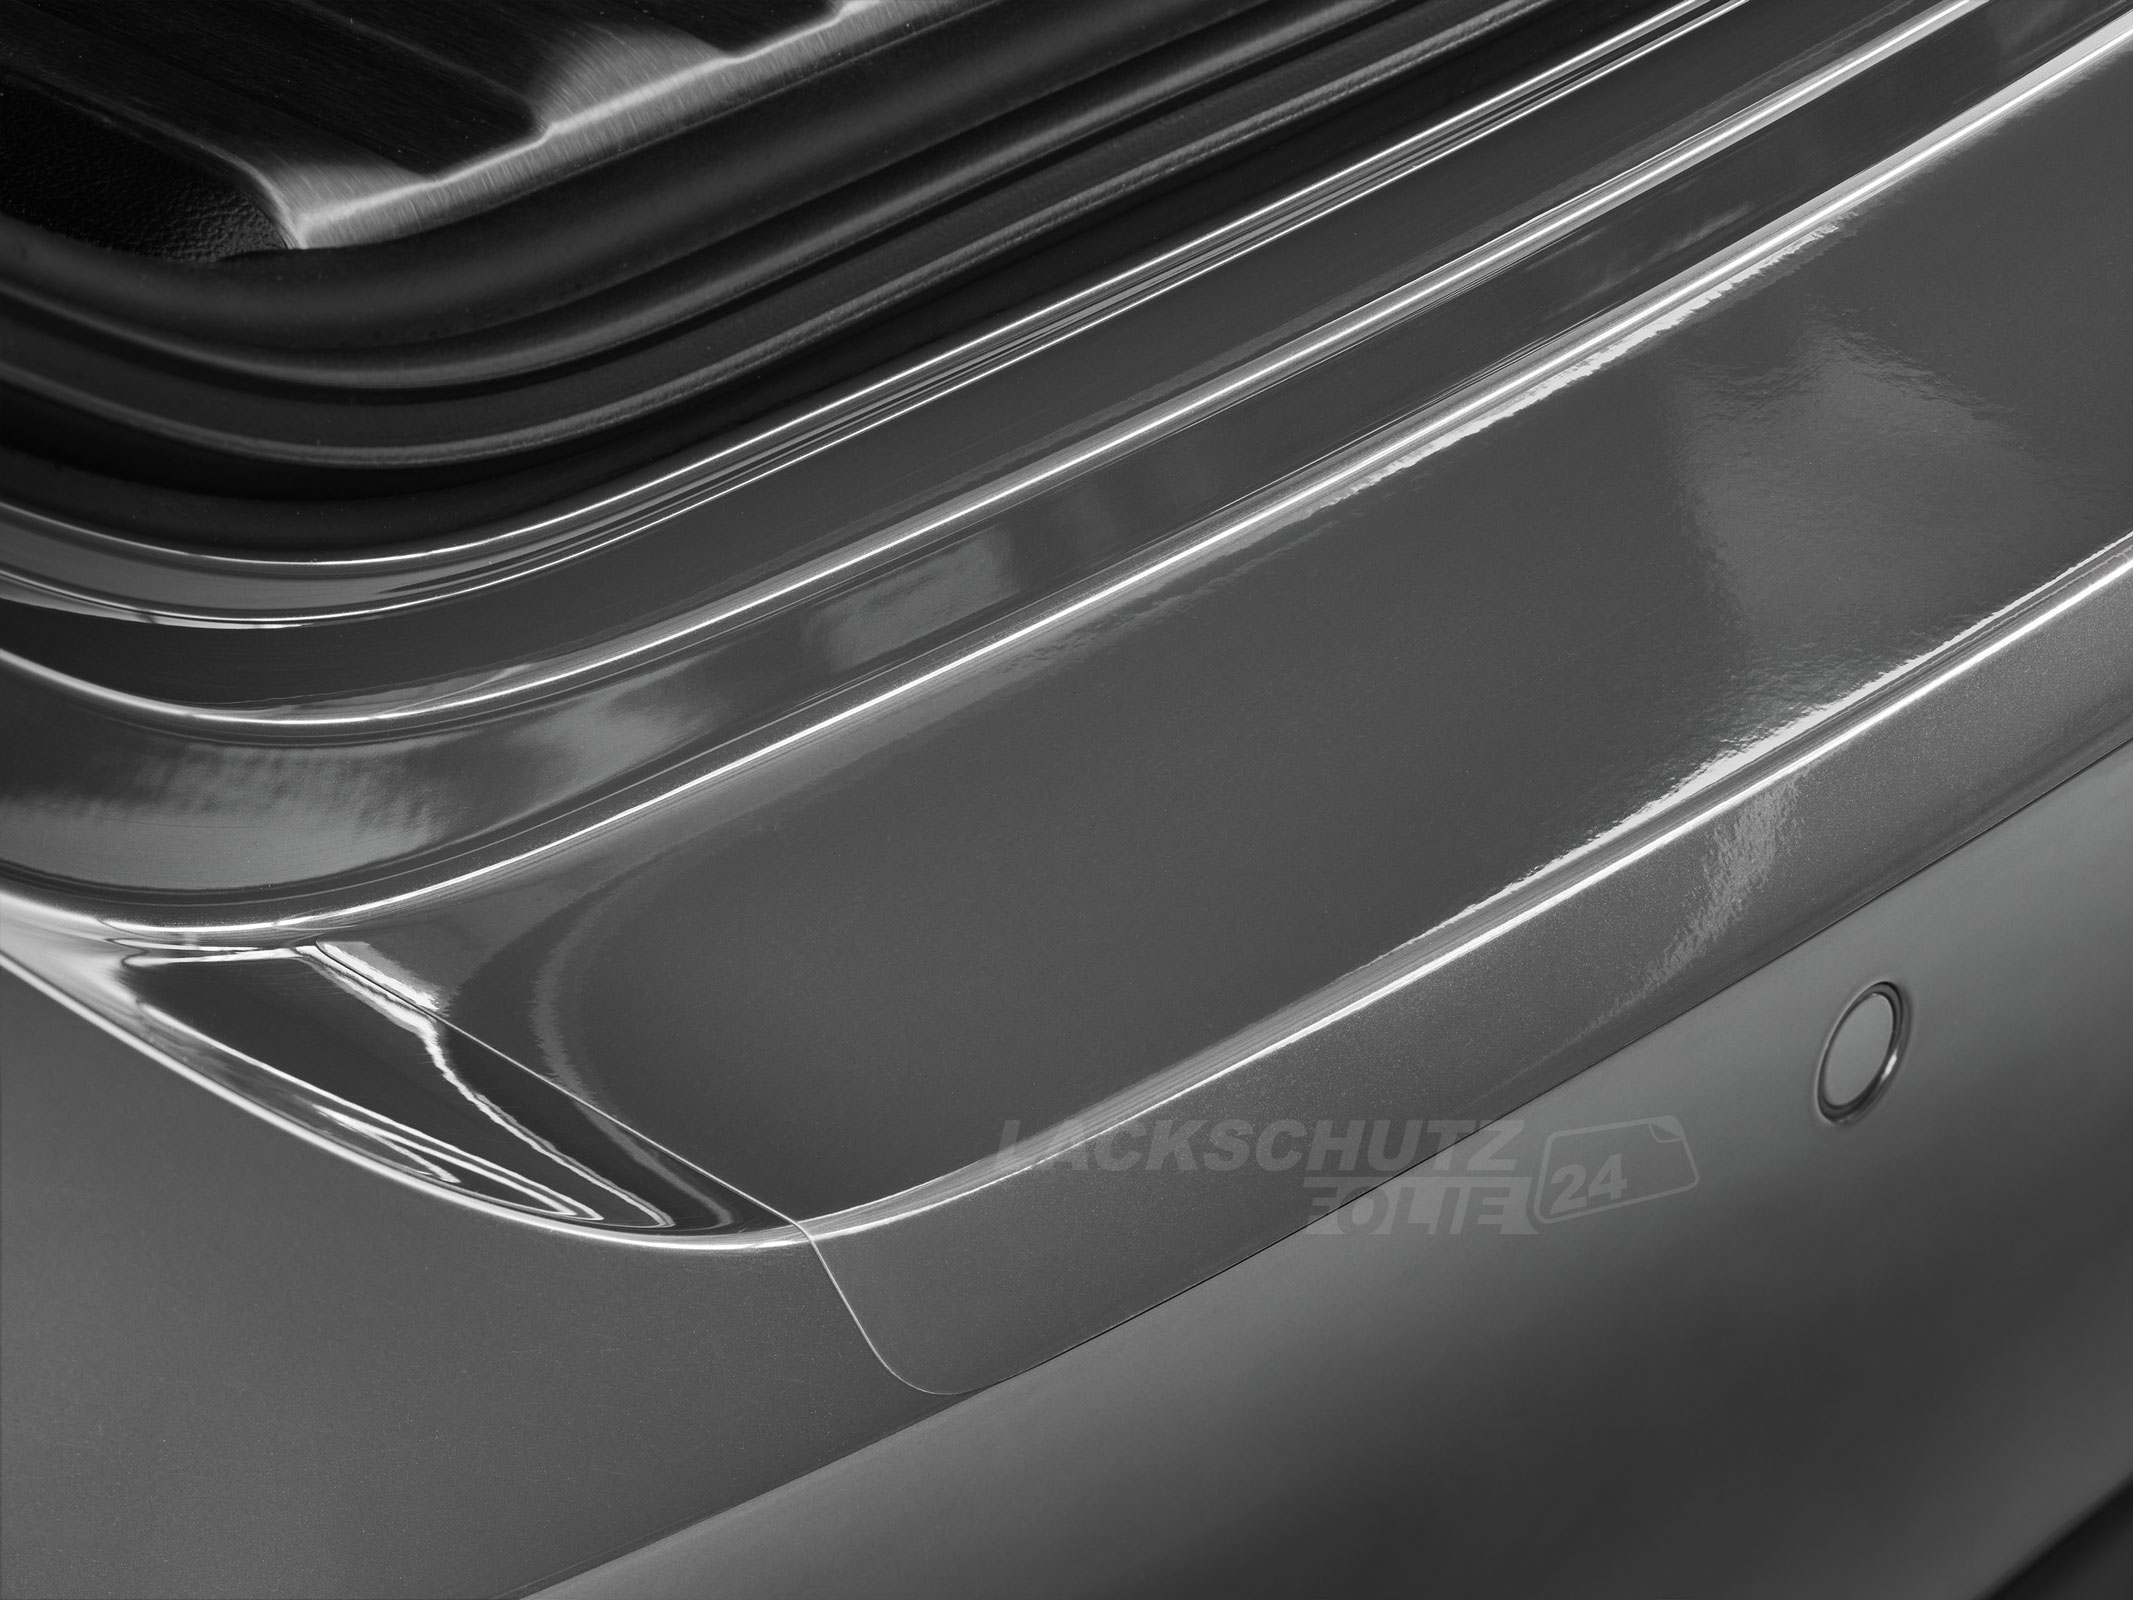 Ladekantenschutzfolie - Transparent Glatt Hochglänzend 150 µm stark für BMW X3 Typ E83, BJ 2004-2010